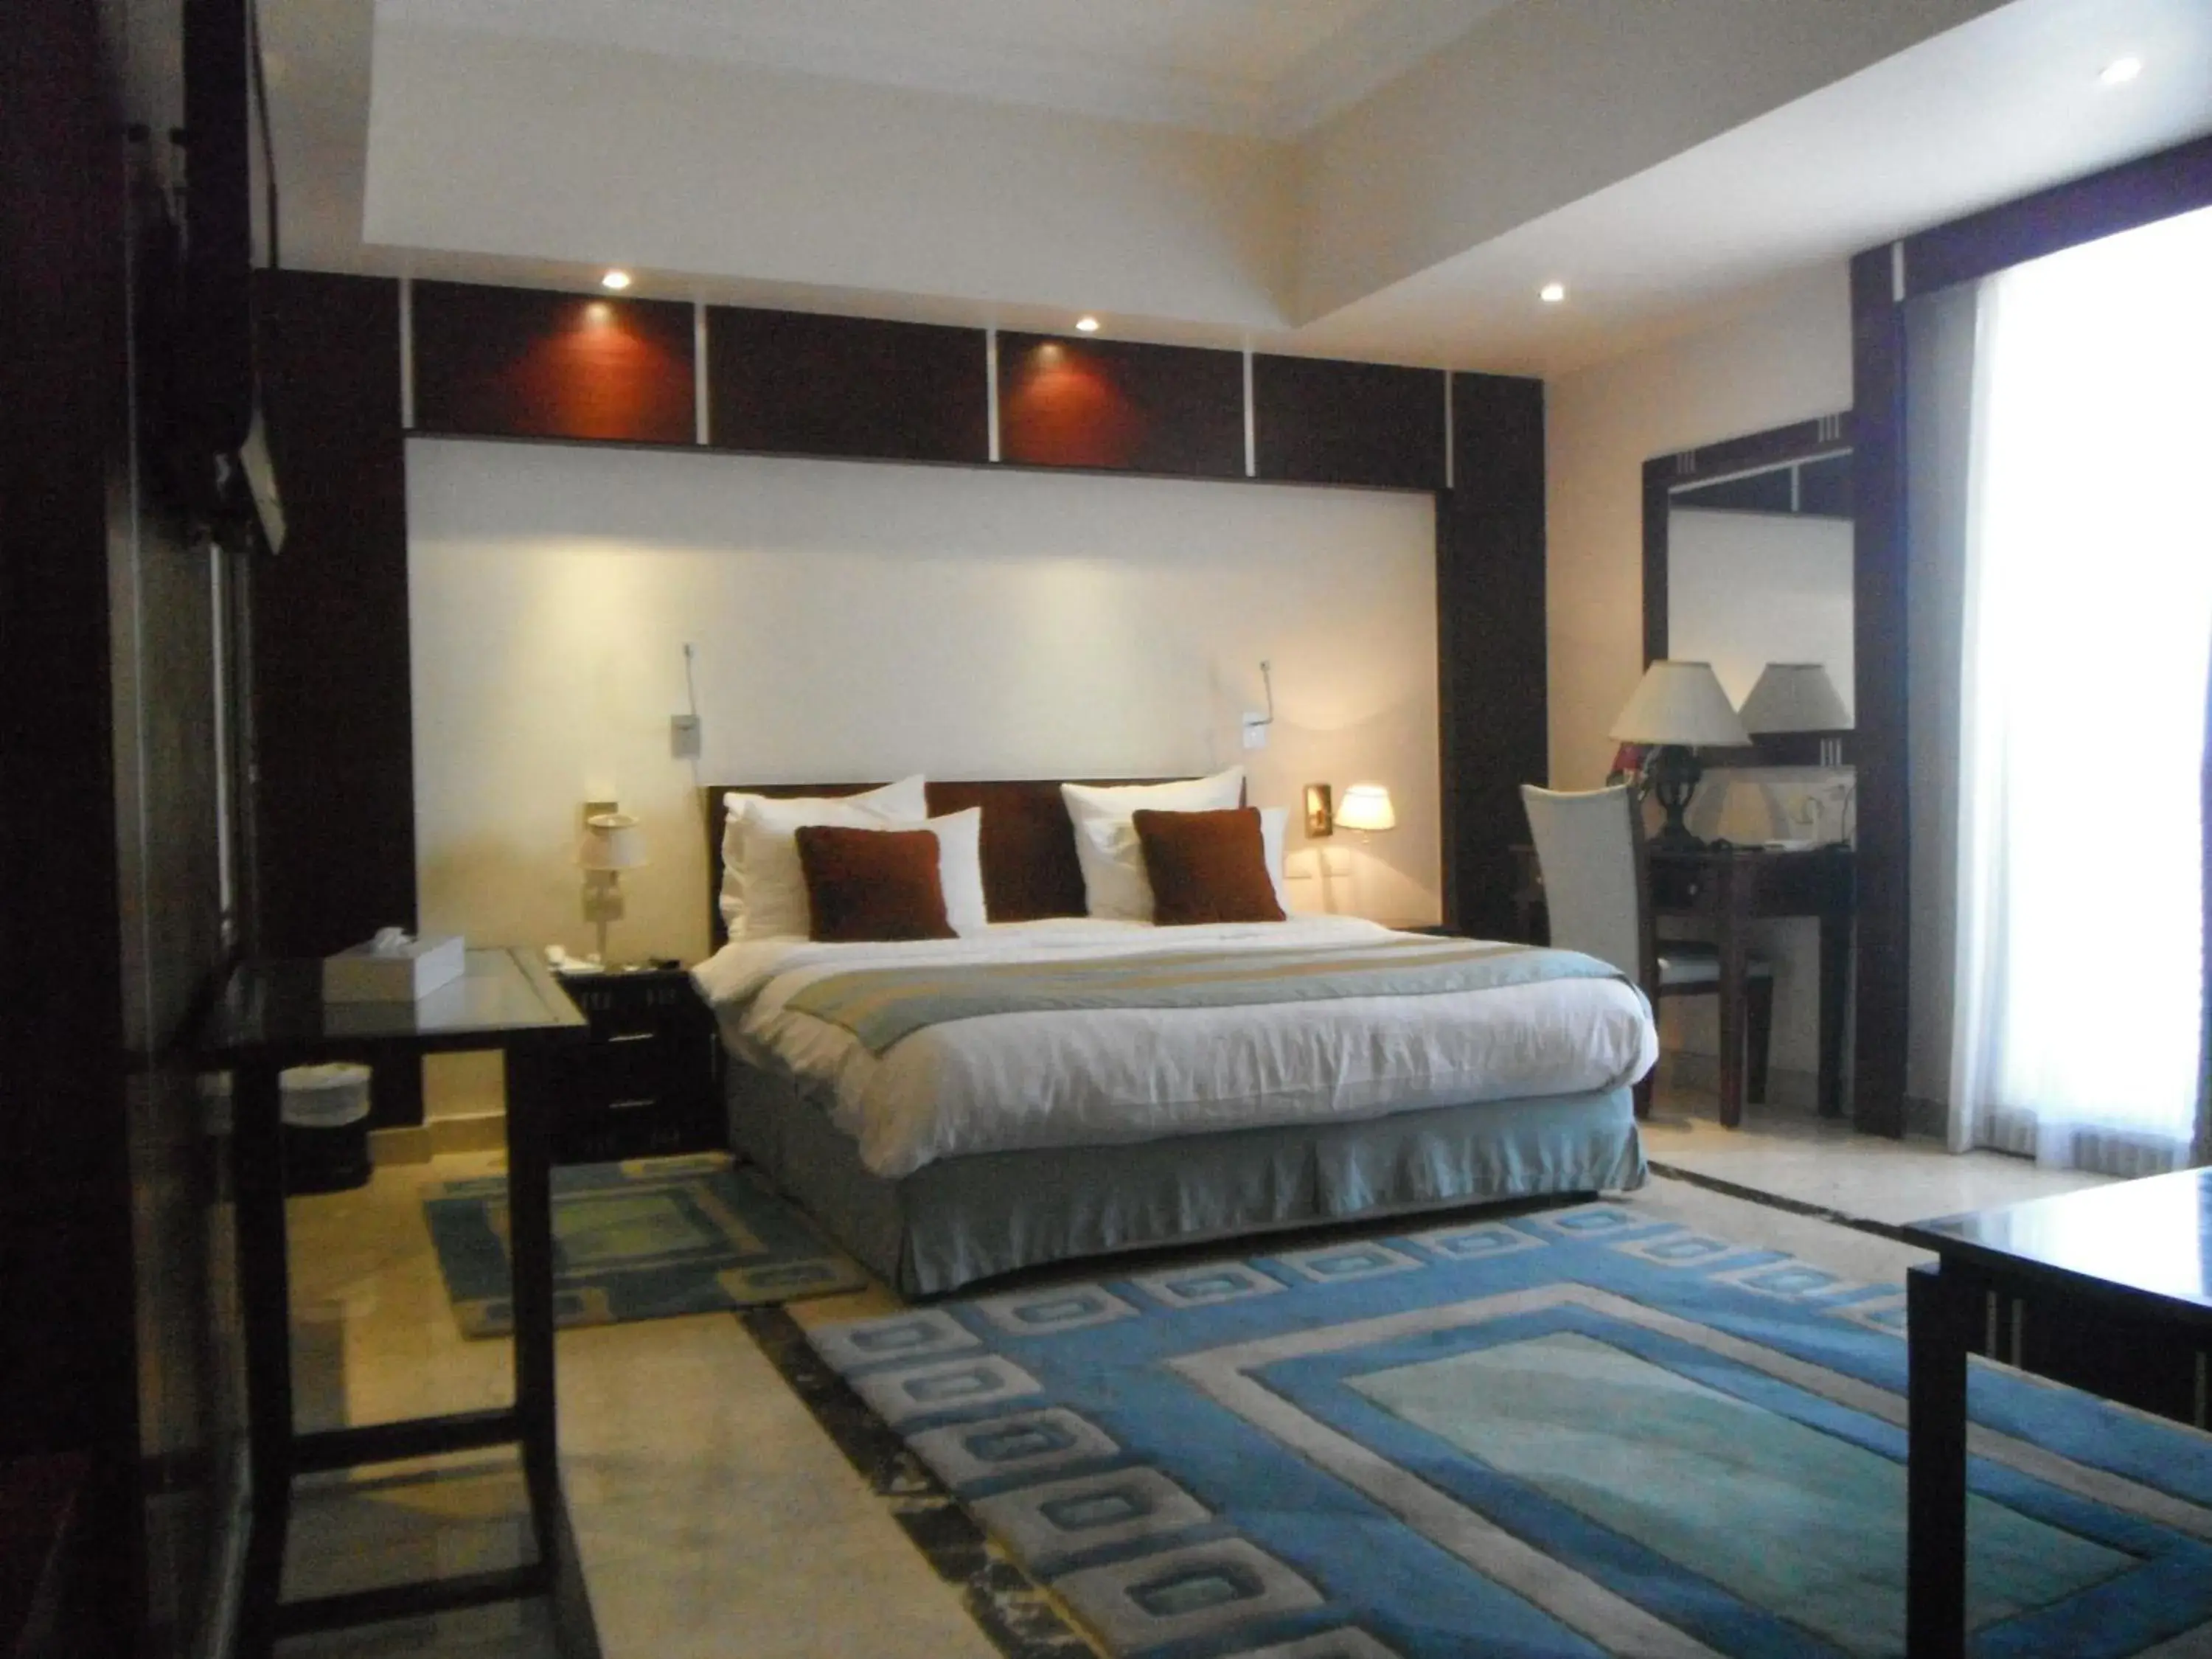 Bedroom, Room Photo in Romance Alexandria Hotel